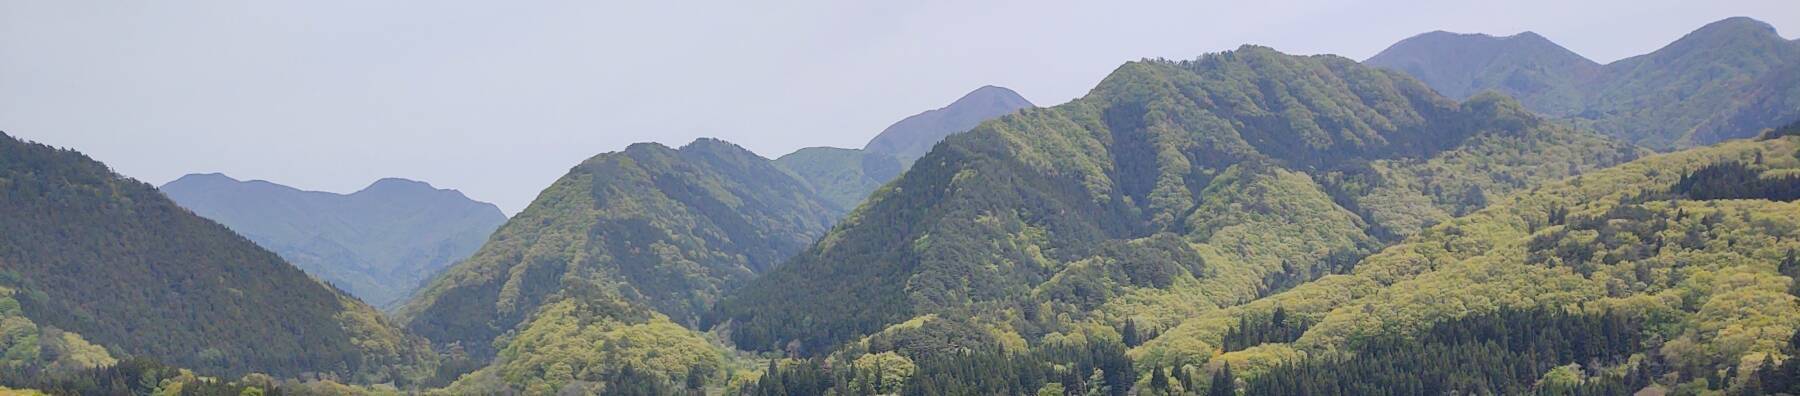 View over the mountain valleys from a rock outcropping at Shiro-iwa Nana-iwa at Minenoura, near Yamadera.